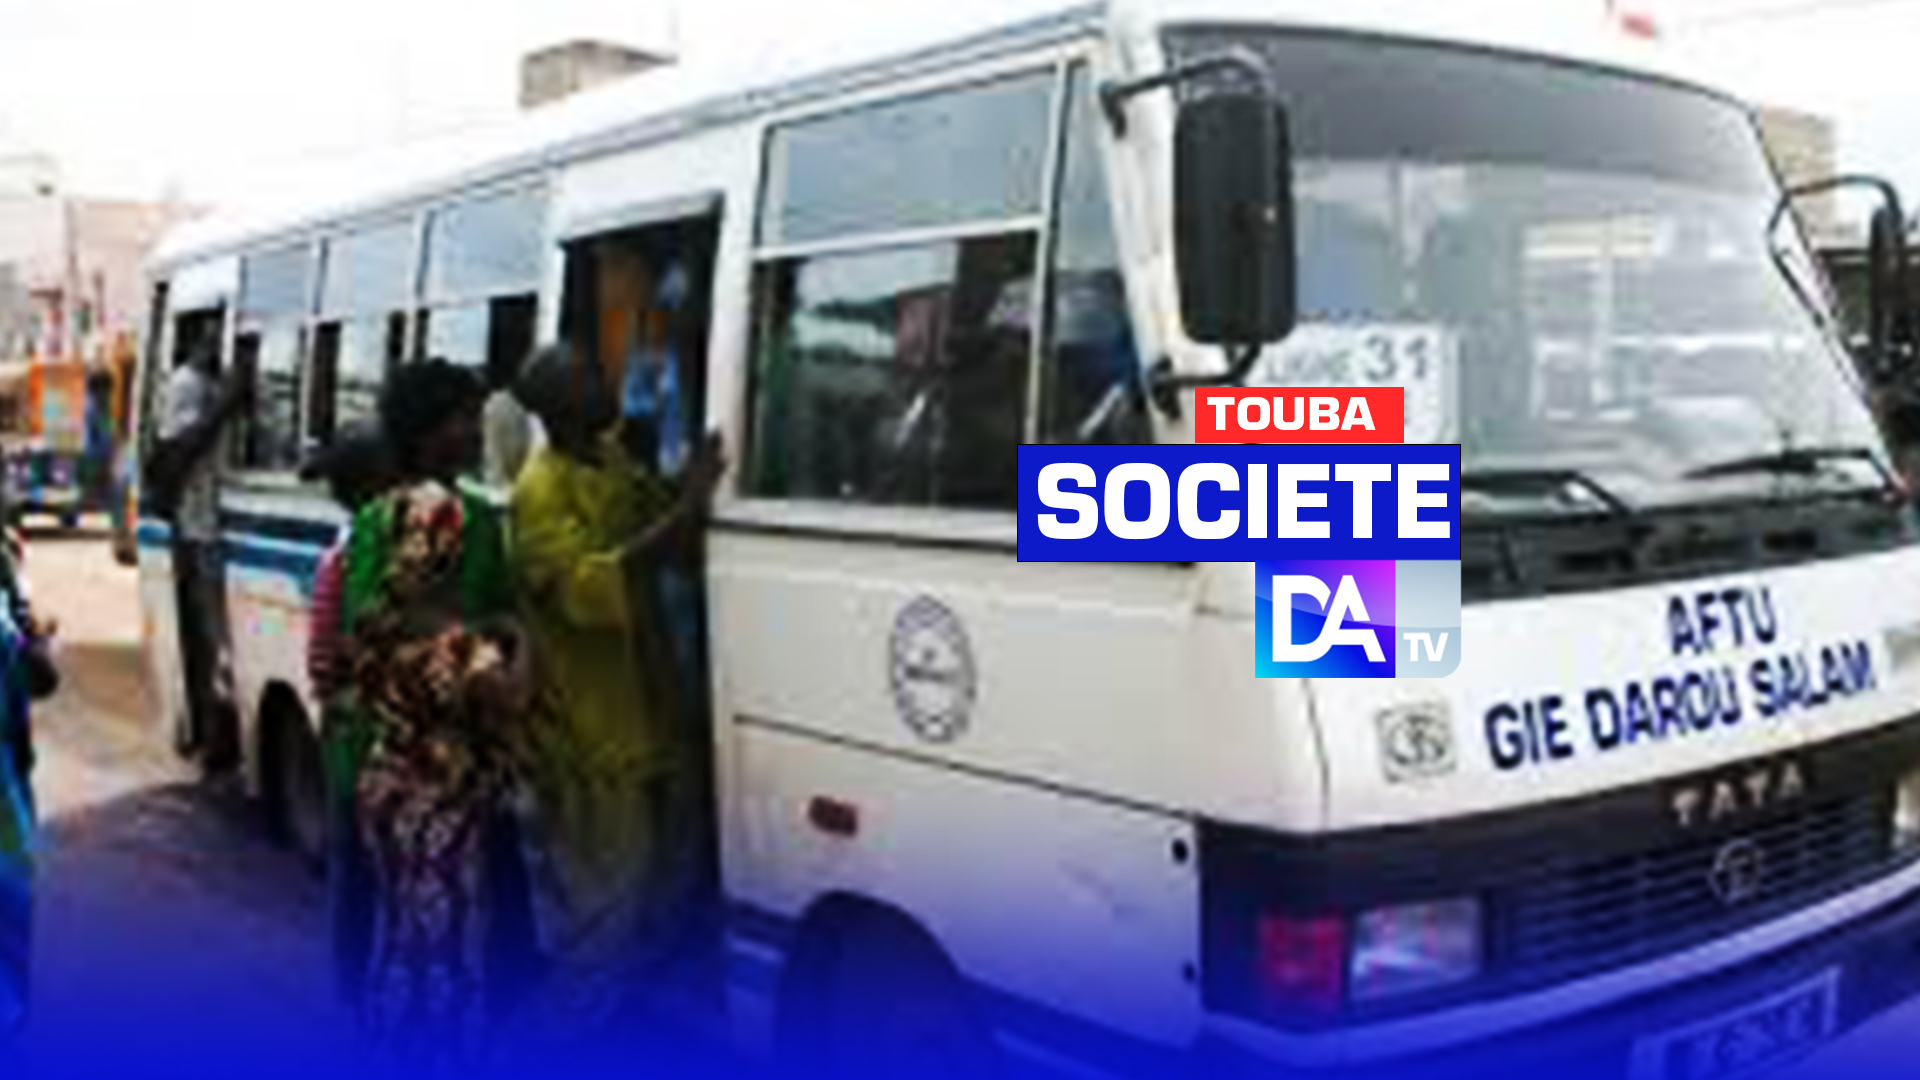 TOUBA - 02 transporteurs arrêtés pour avoir tenté de caillasser un minibus Tata